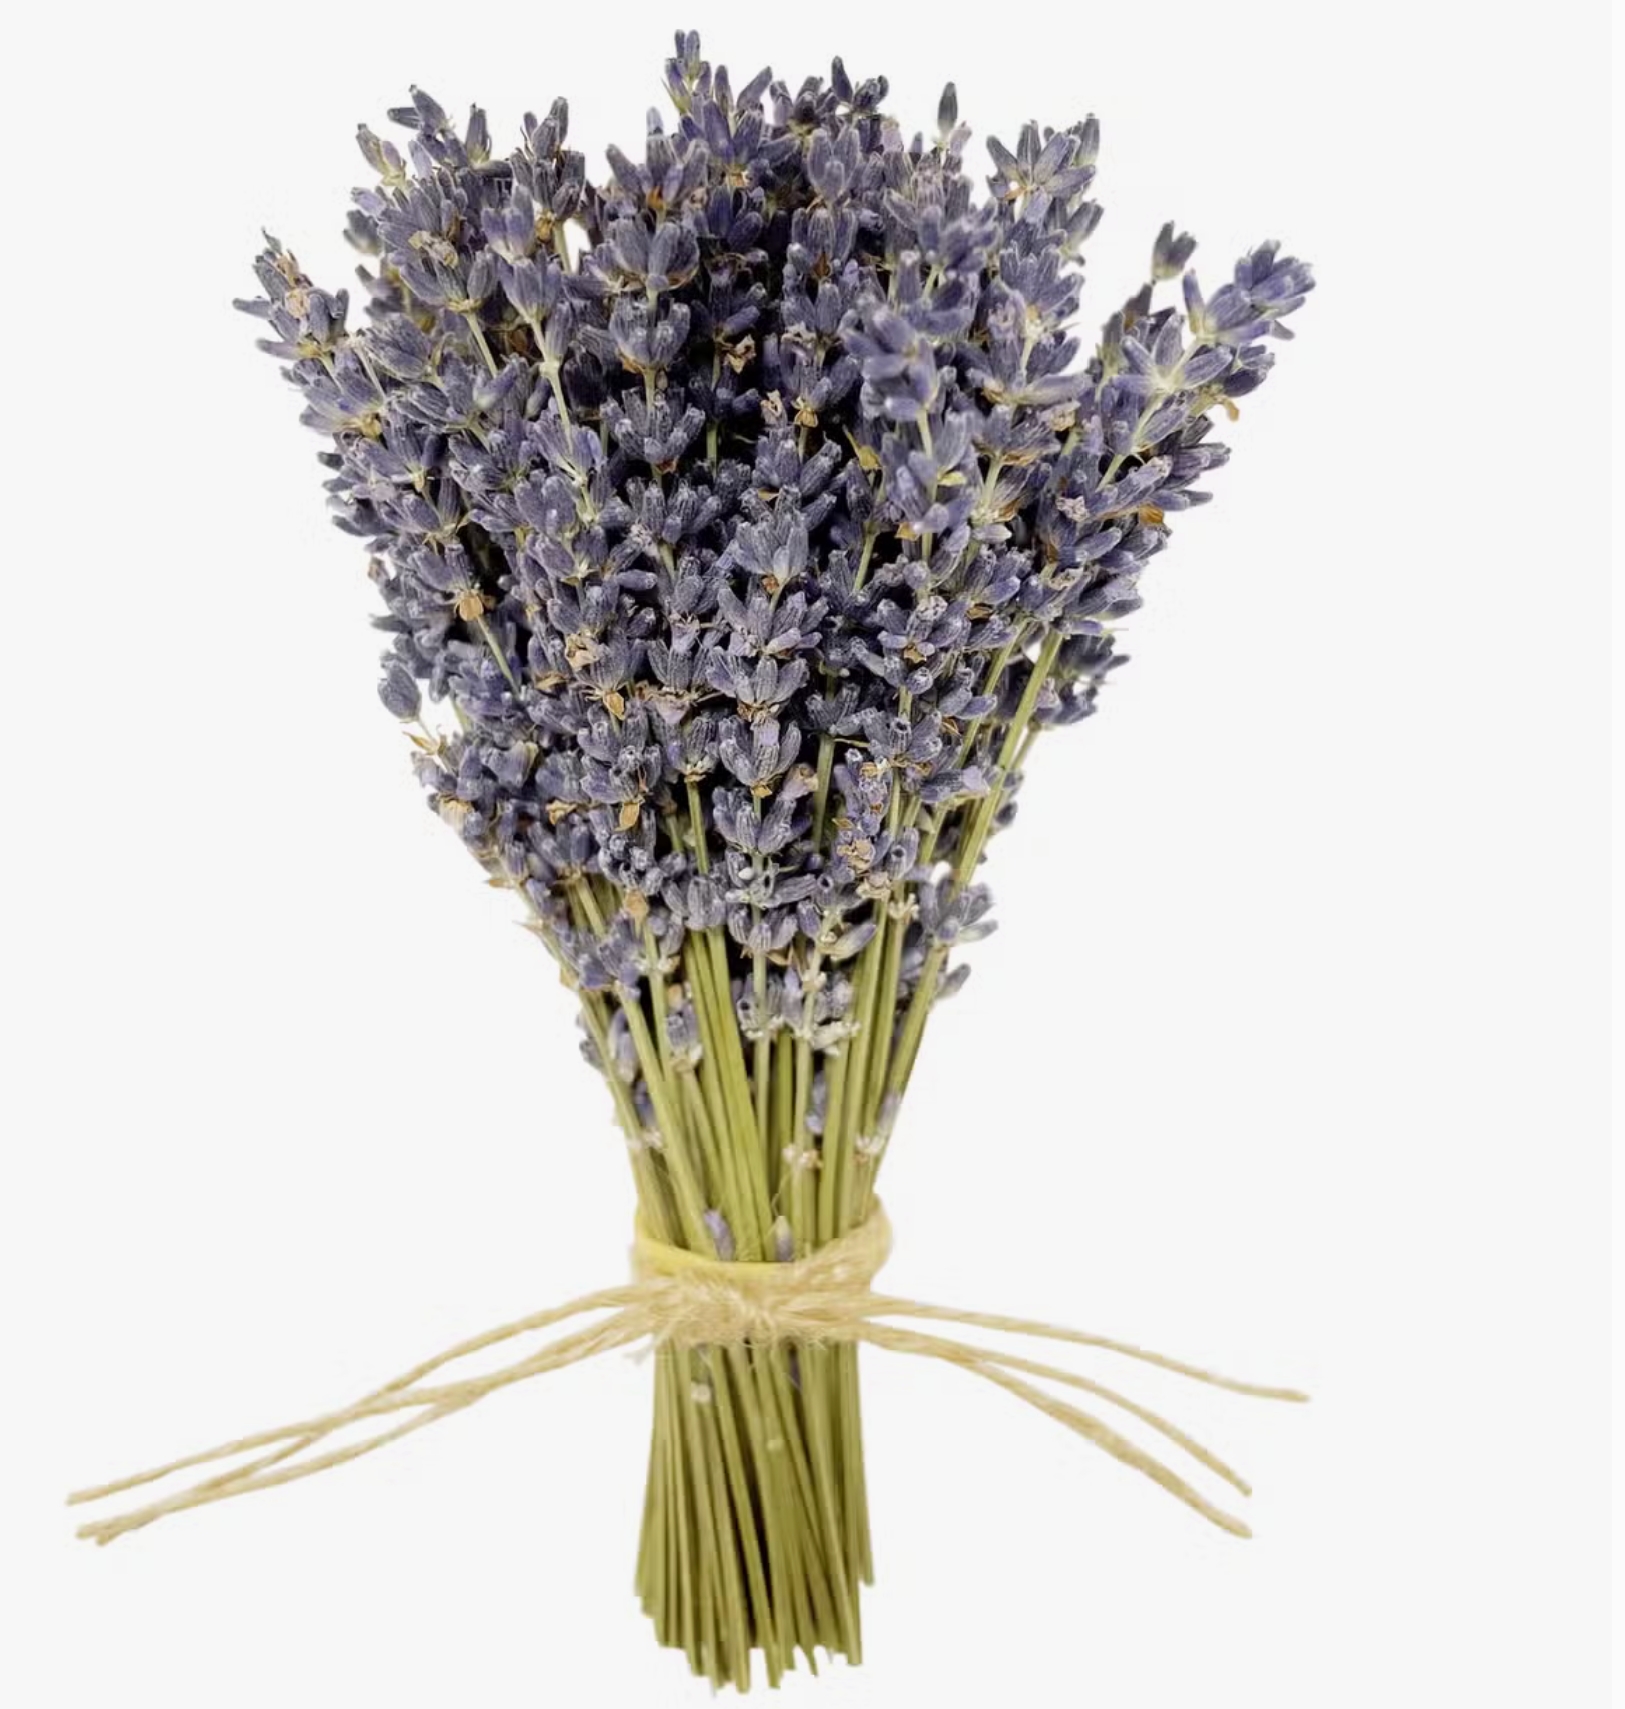 MINI French Lavender Bundle